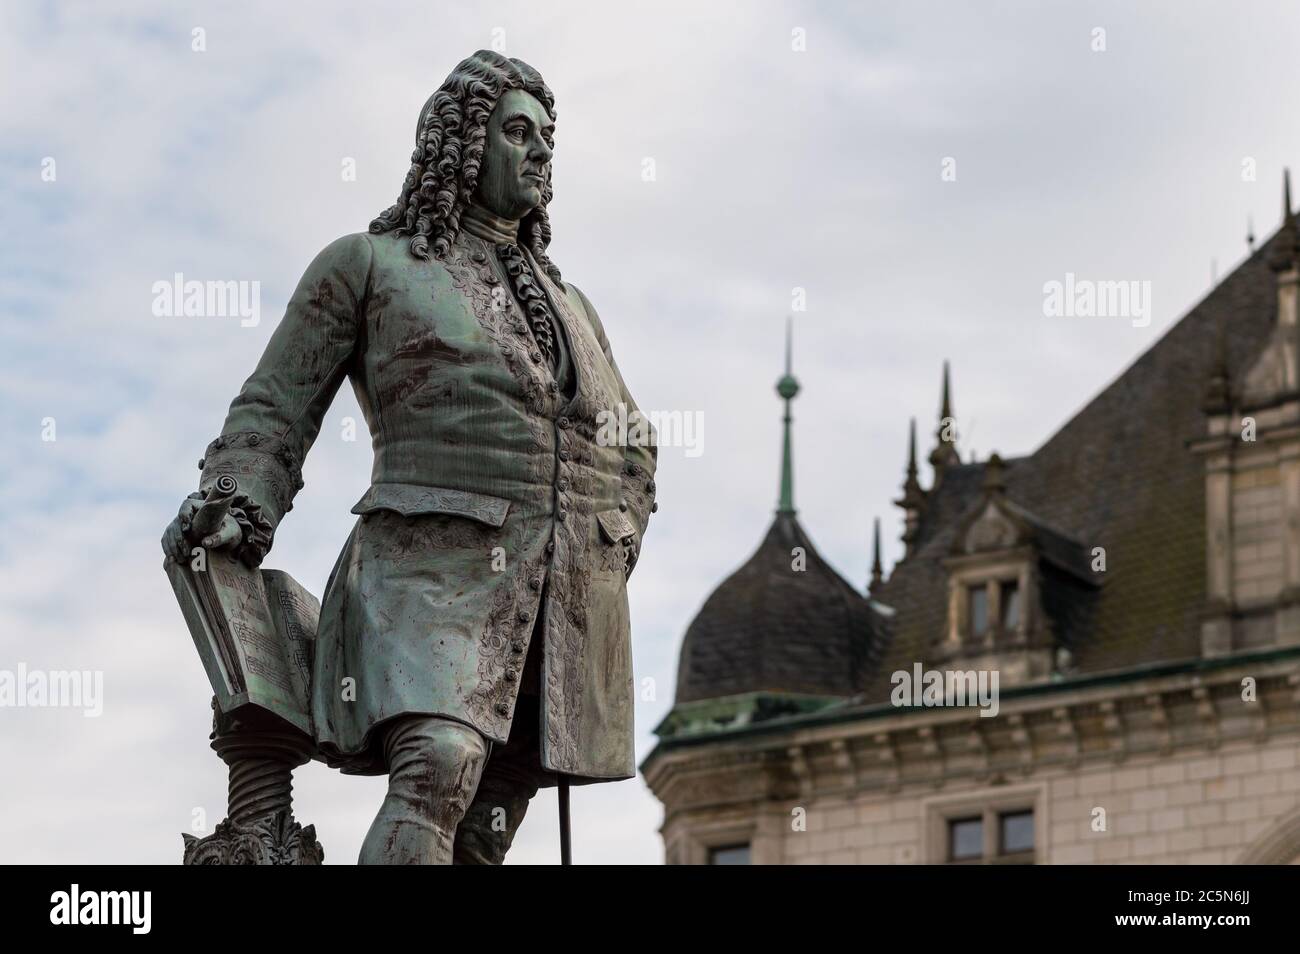 Halle (Saale) / Alemania - 27 de febrero de 2017: Estatua del compositor barroco George Frideric Handel en la Plaza del mercado en el casco antiguo de Halle, Alemania Foto de stock